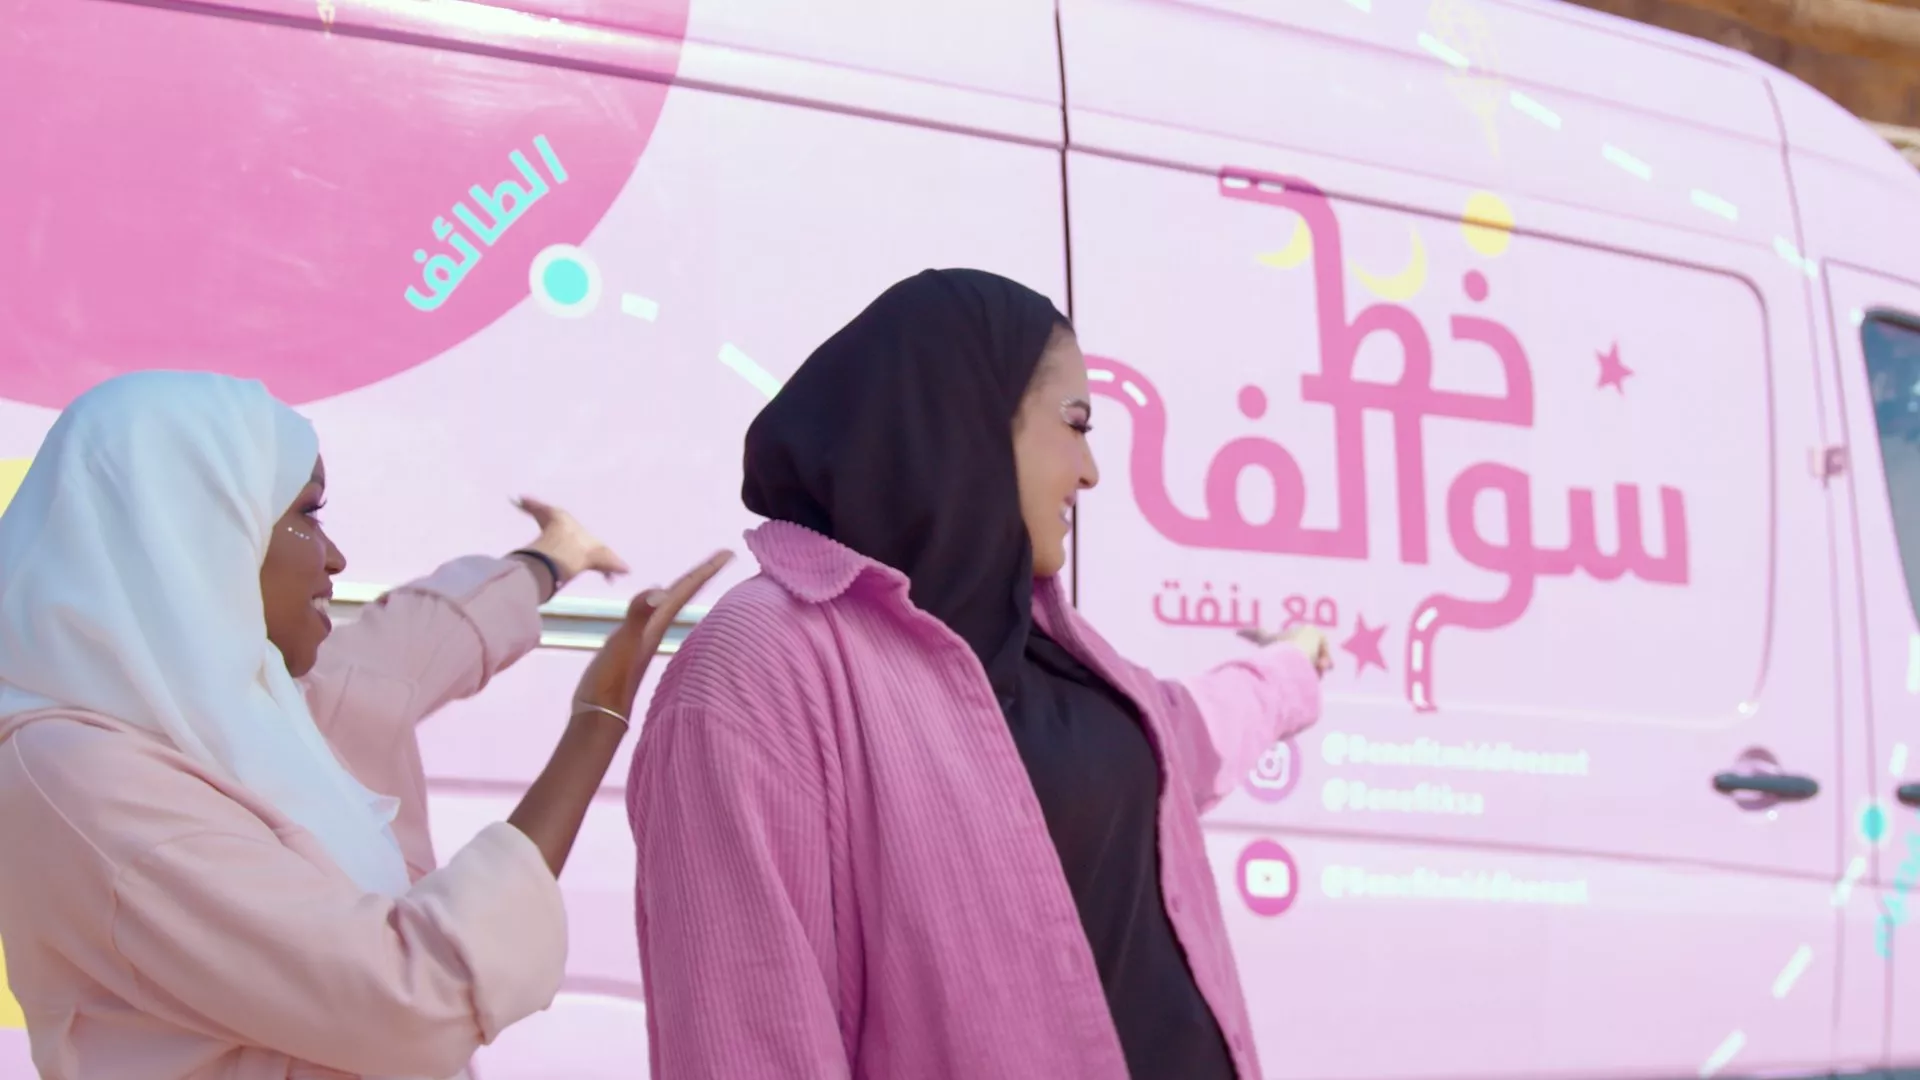 بنفت كوزمتكس تحتفل بشهر رمضان 2022 مع حملة جديدة تتخلّلها رحلة شيّقة في السعودية